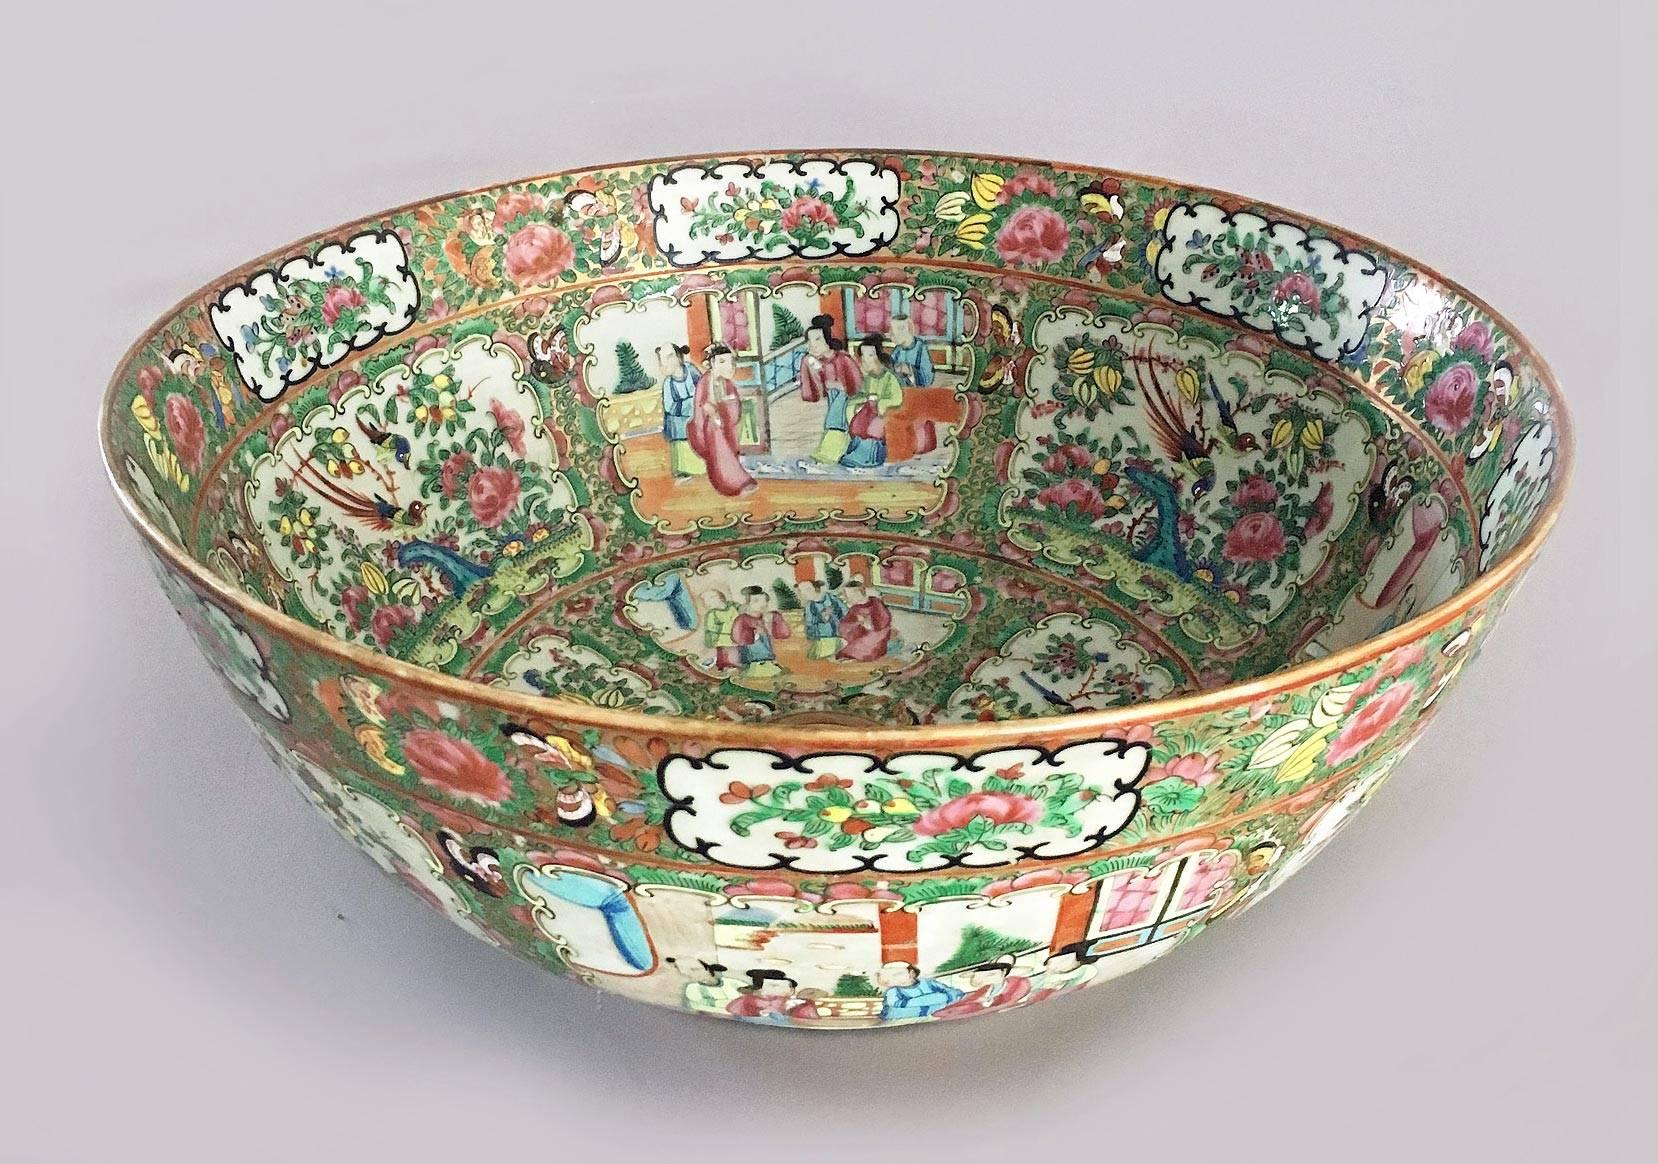 rose medallion bowl